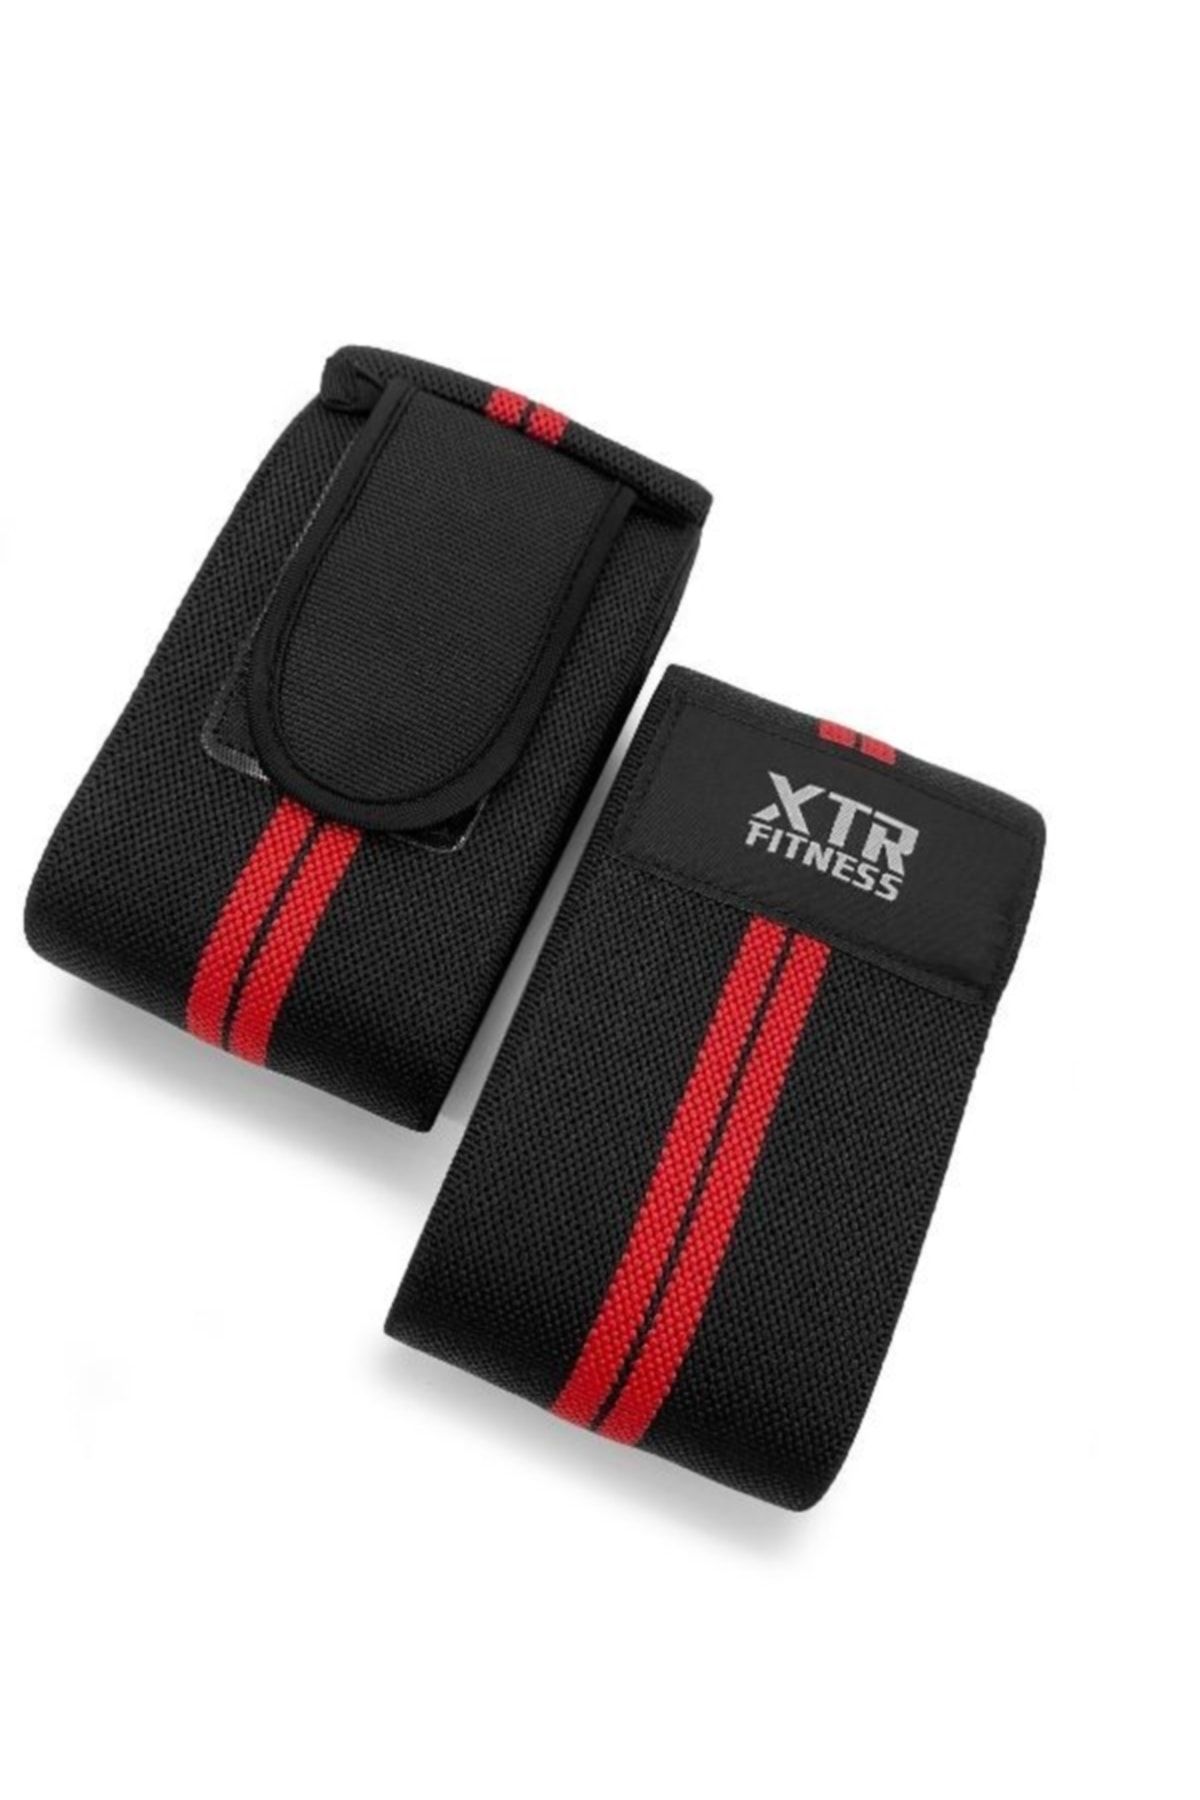 XTR Fitness Pro Knee Wraps Diz Bandajı 2'li Paket